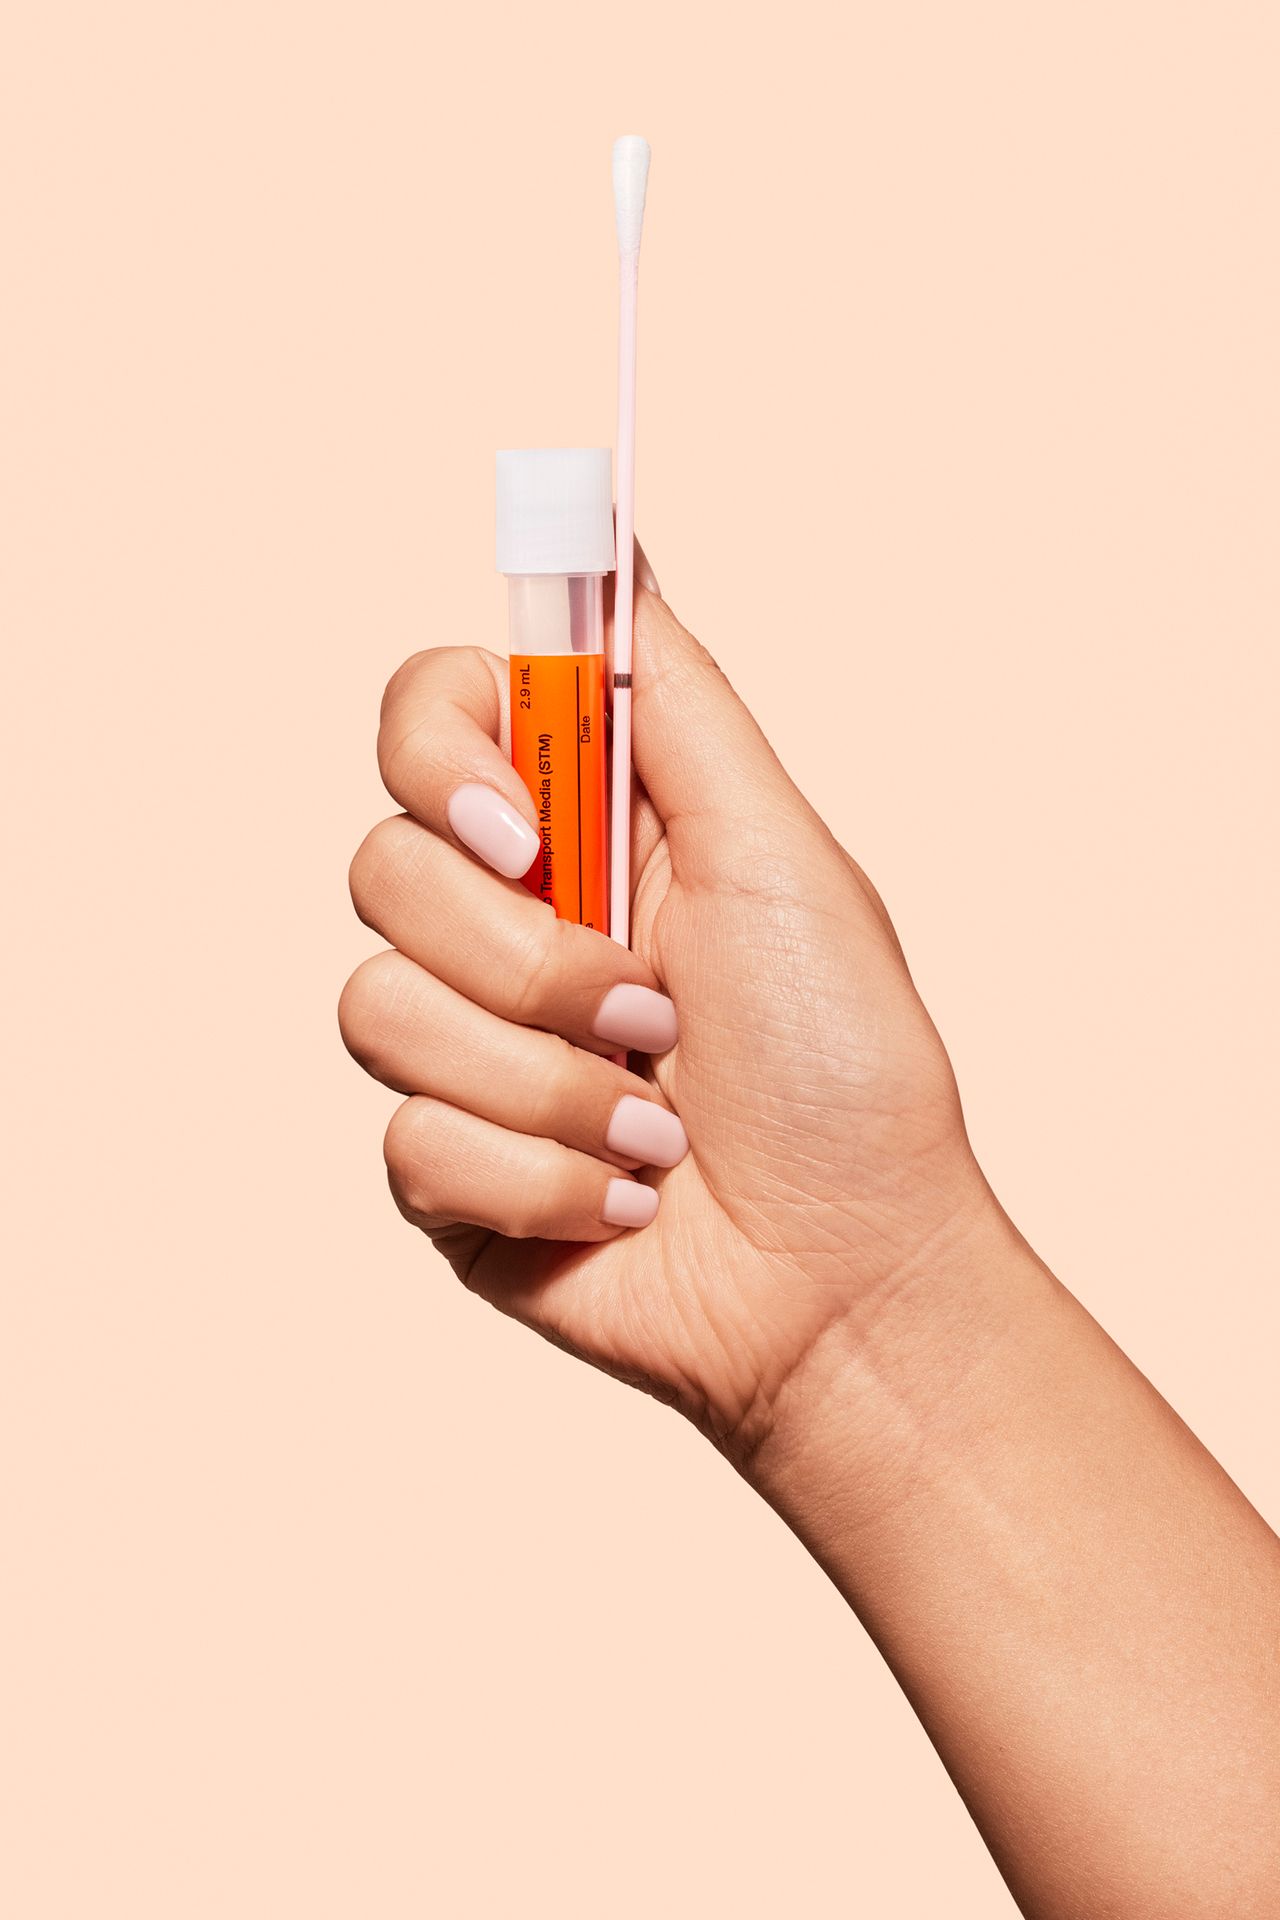 Bilde av hånd som holder vaginal prøve for klamydia